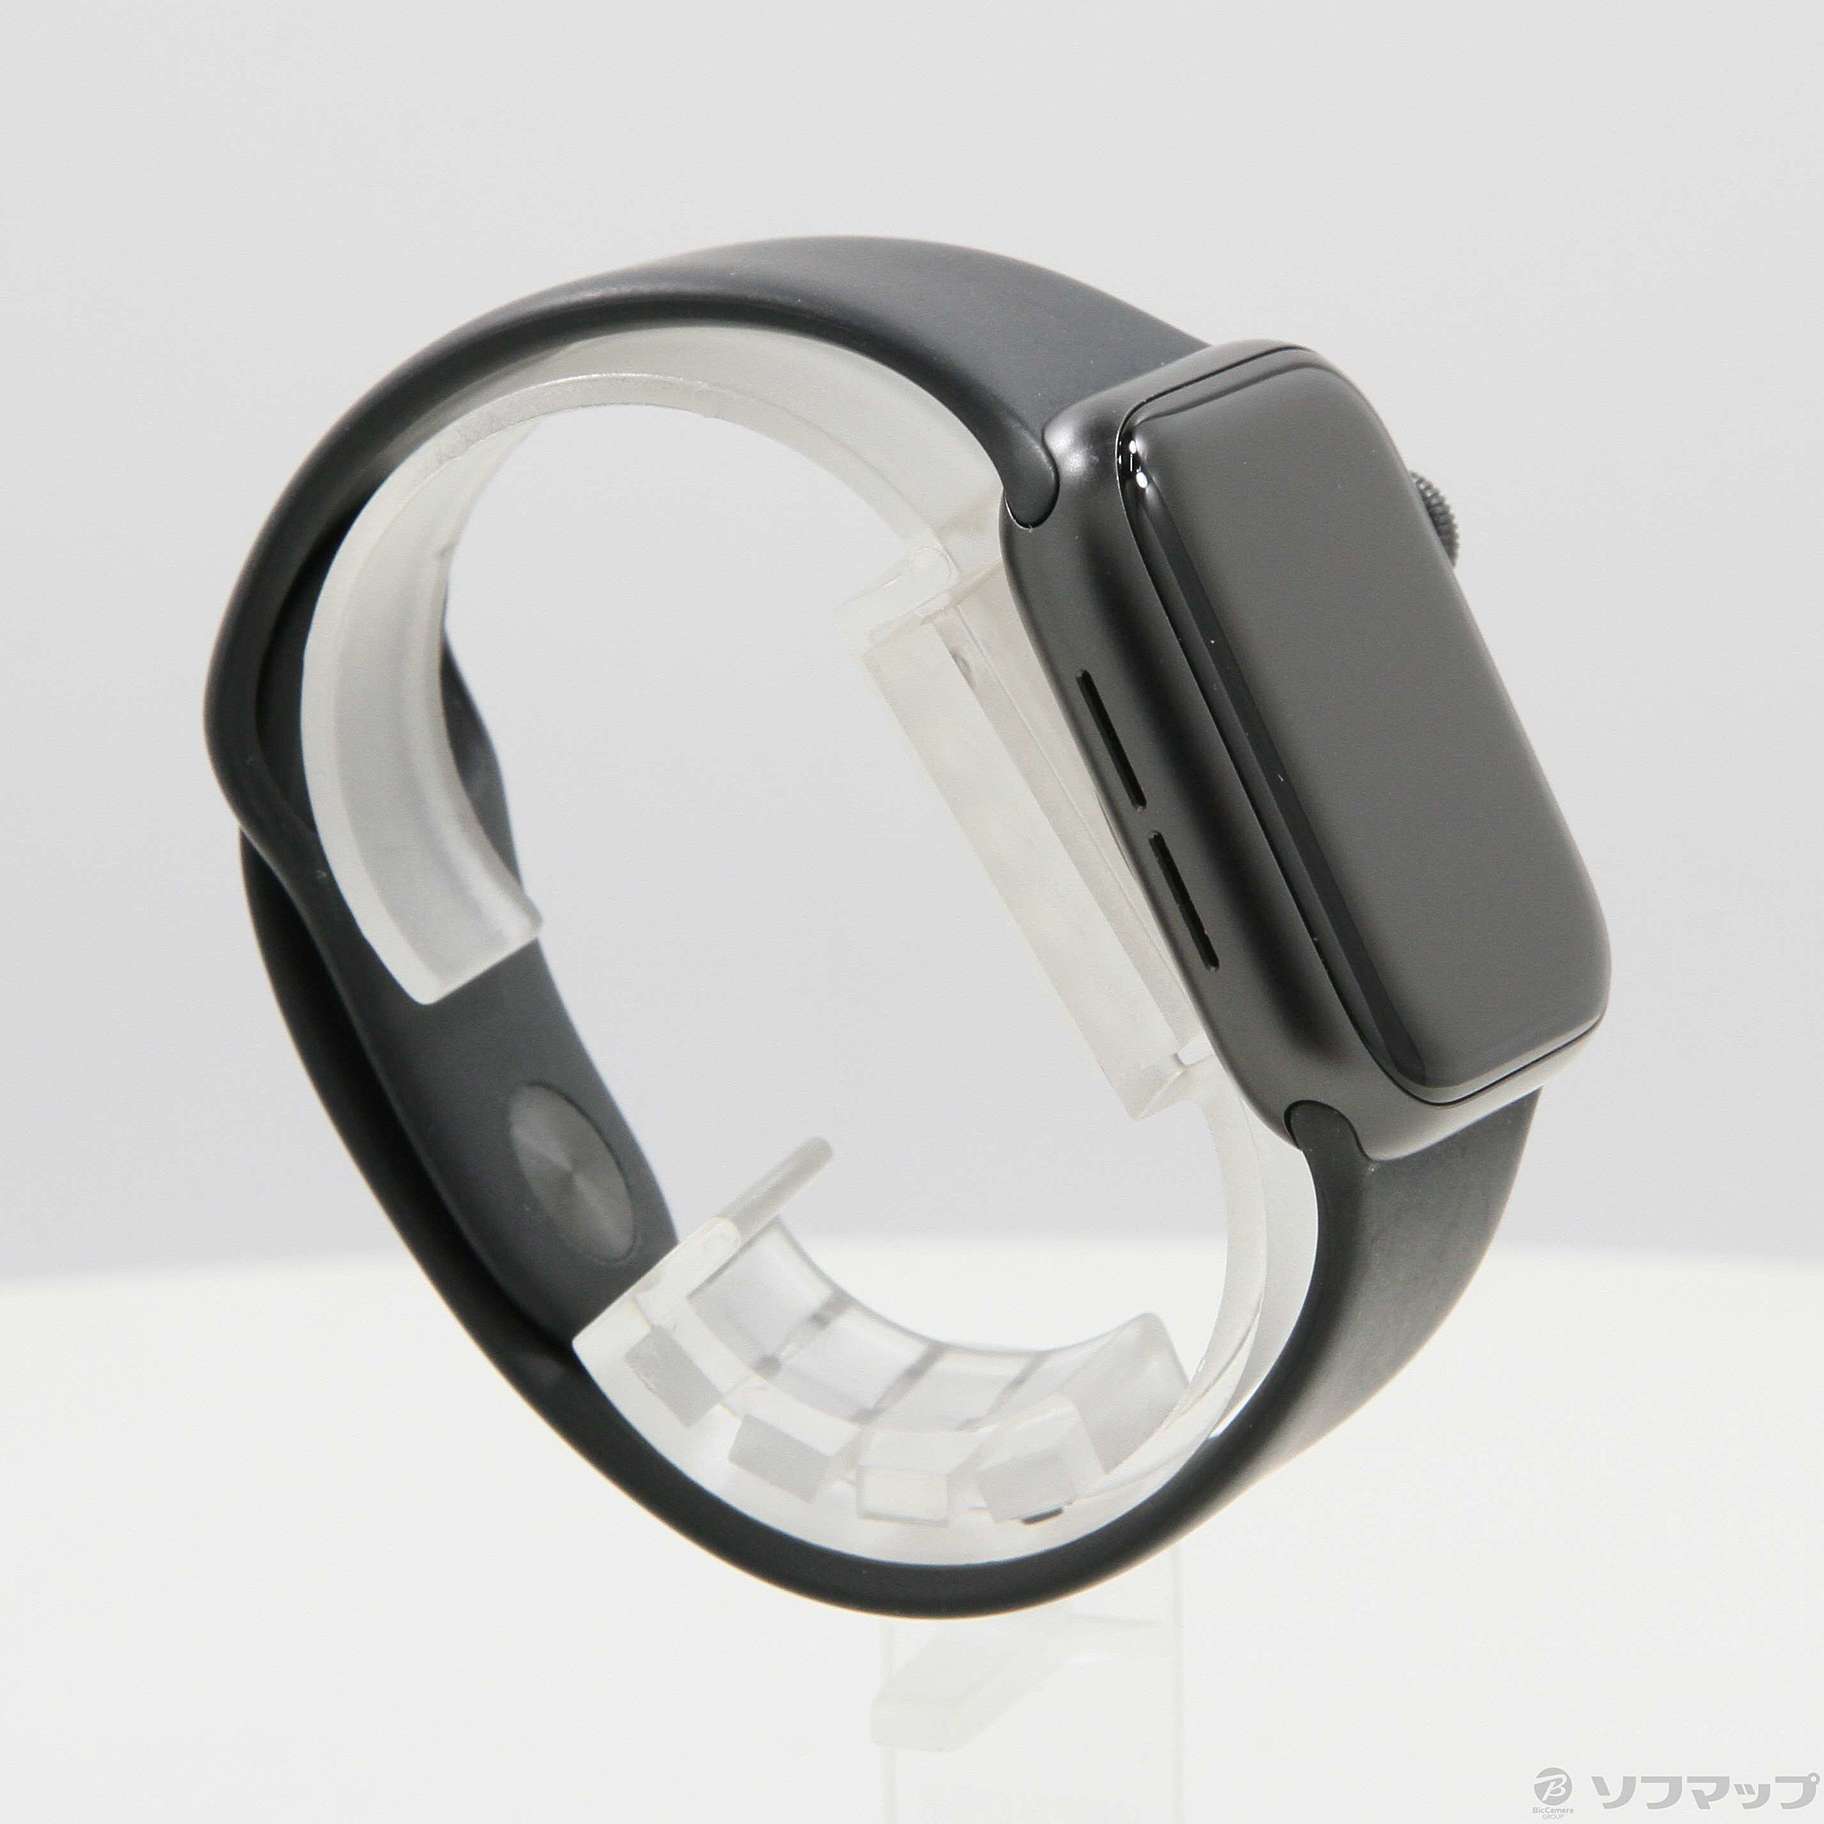 〔中古品〕 Apple Watch SE 第1世代 GPS 40mm スペースグレイアルミニウムケース ブラックスポーツバンド